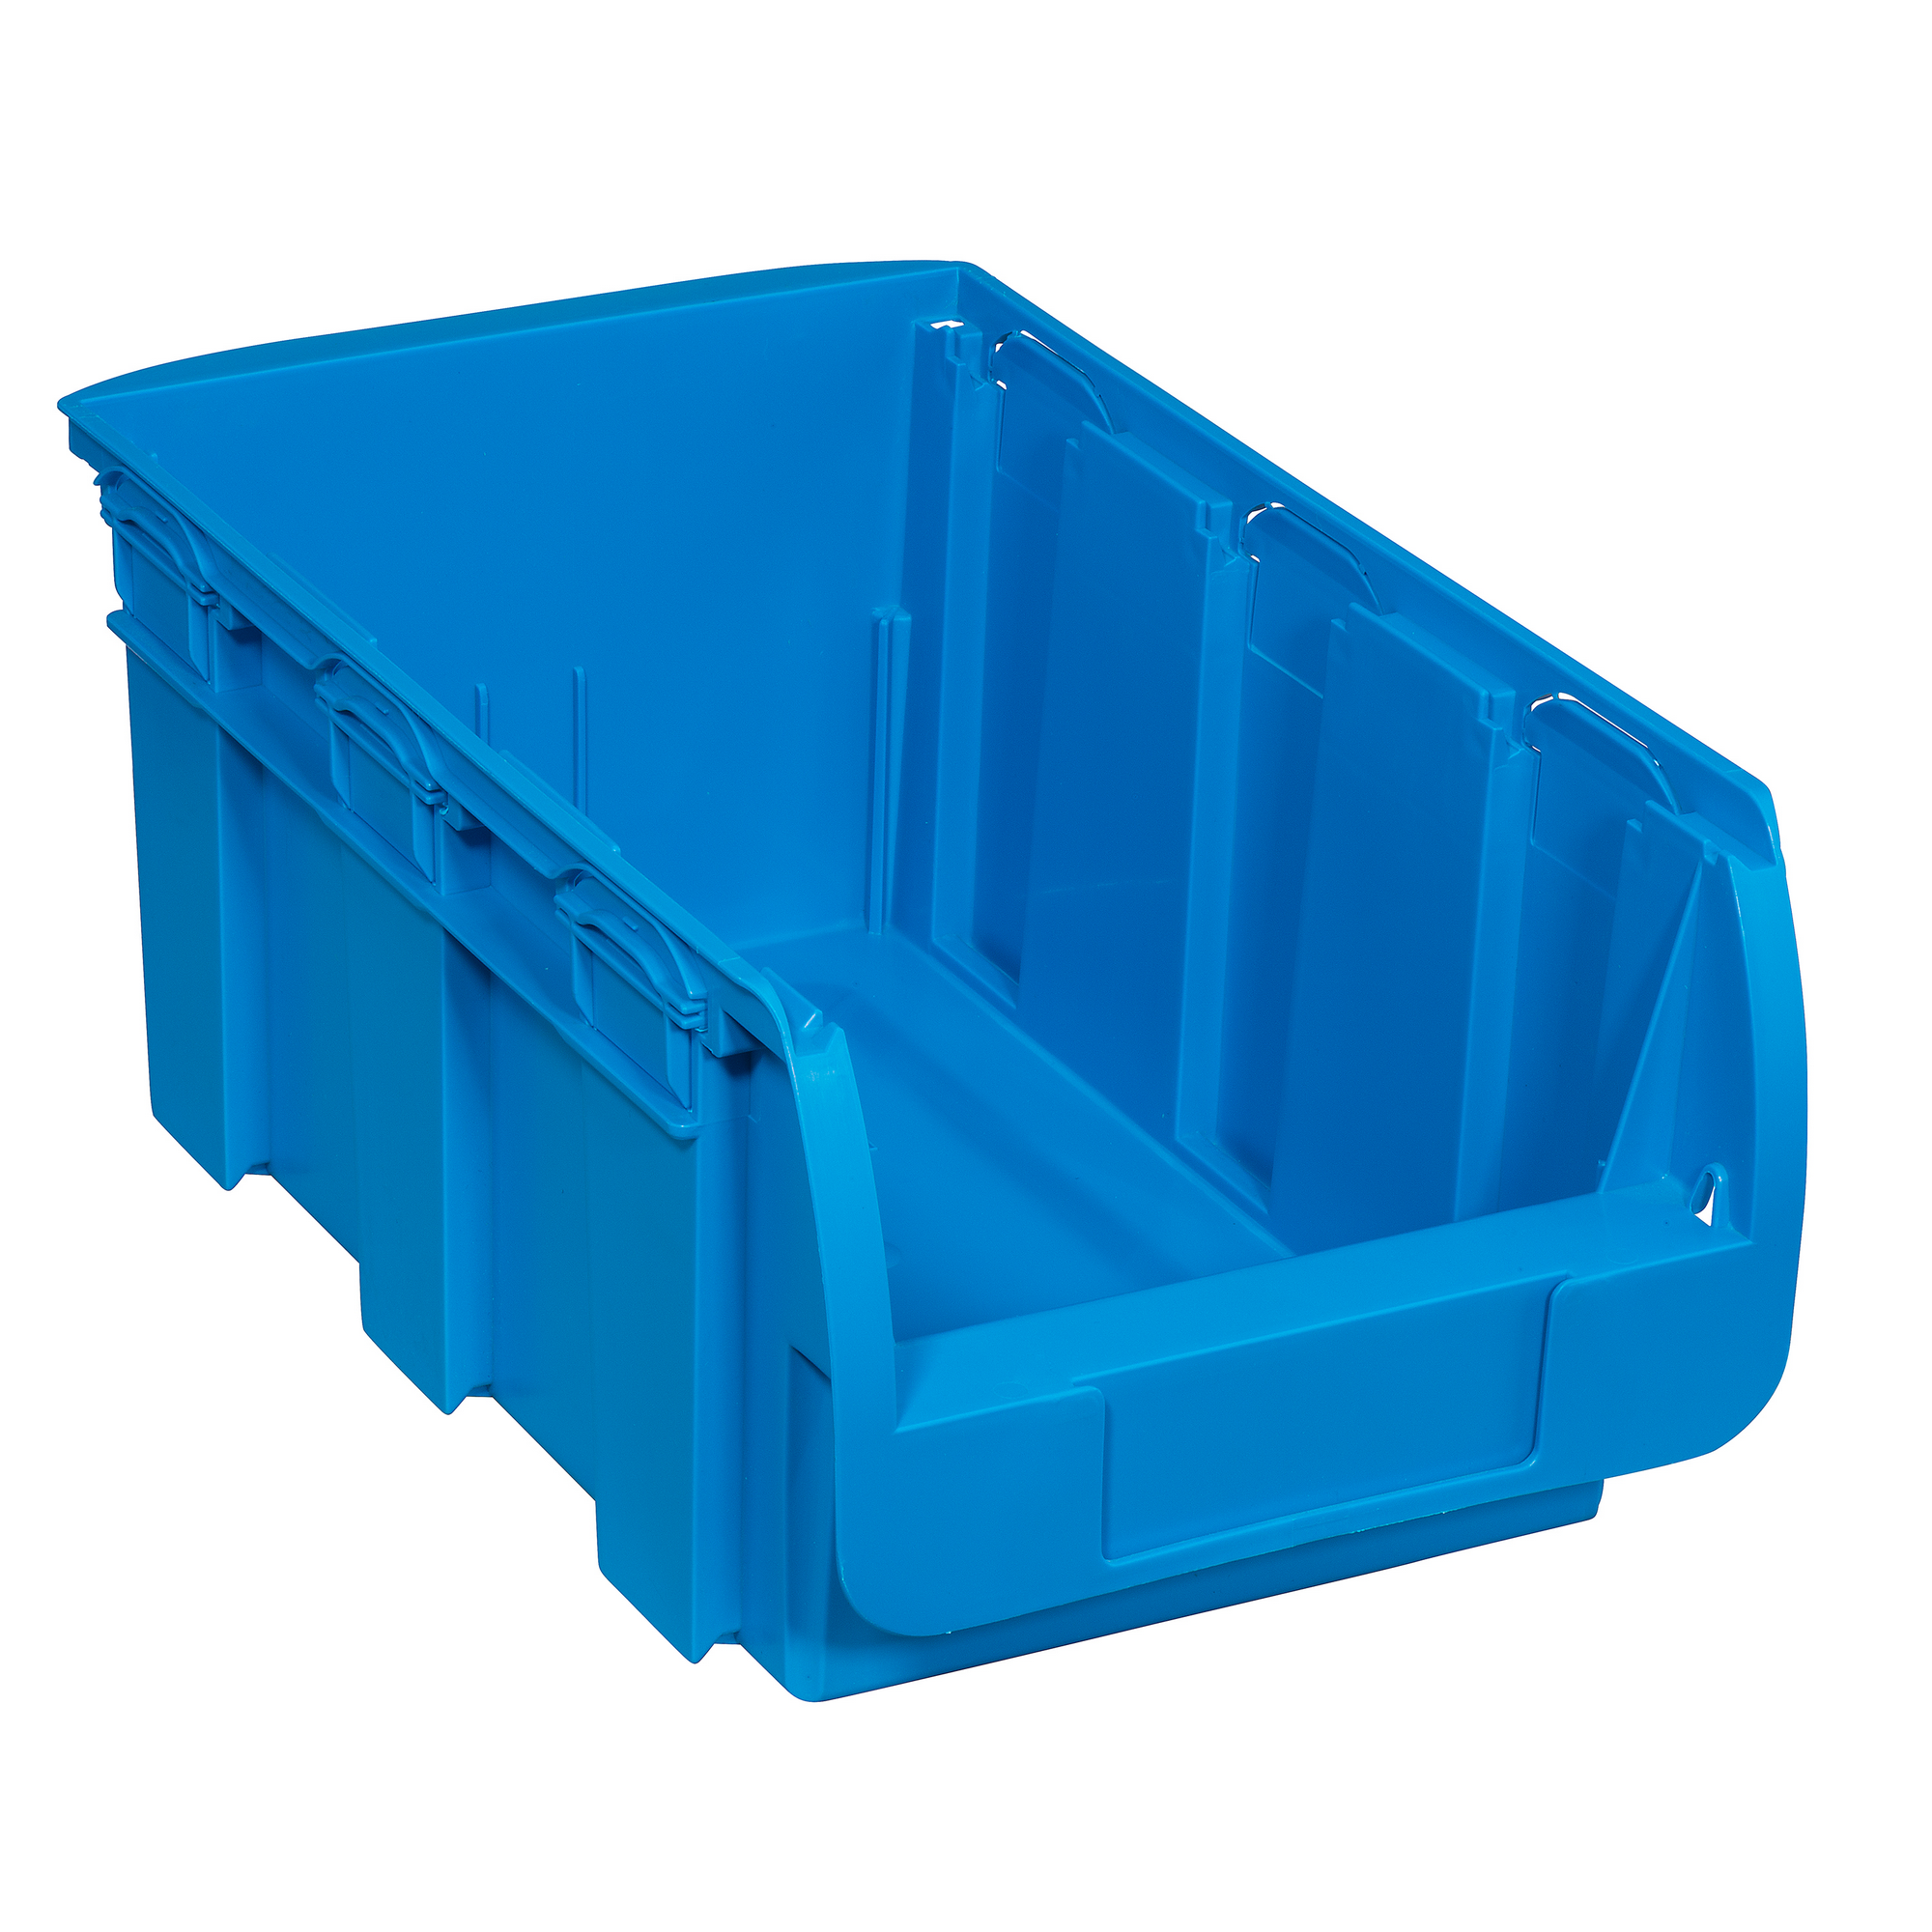 ProfiPlus Stapelsichtbox 'Compact 4' blau 35 x 21 x 15 cm + product picture